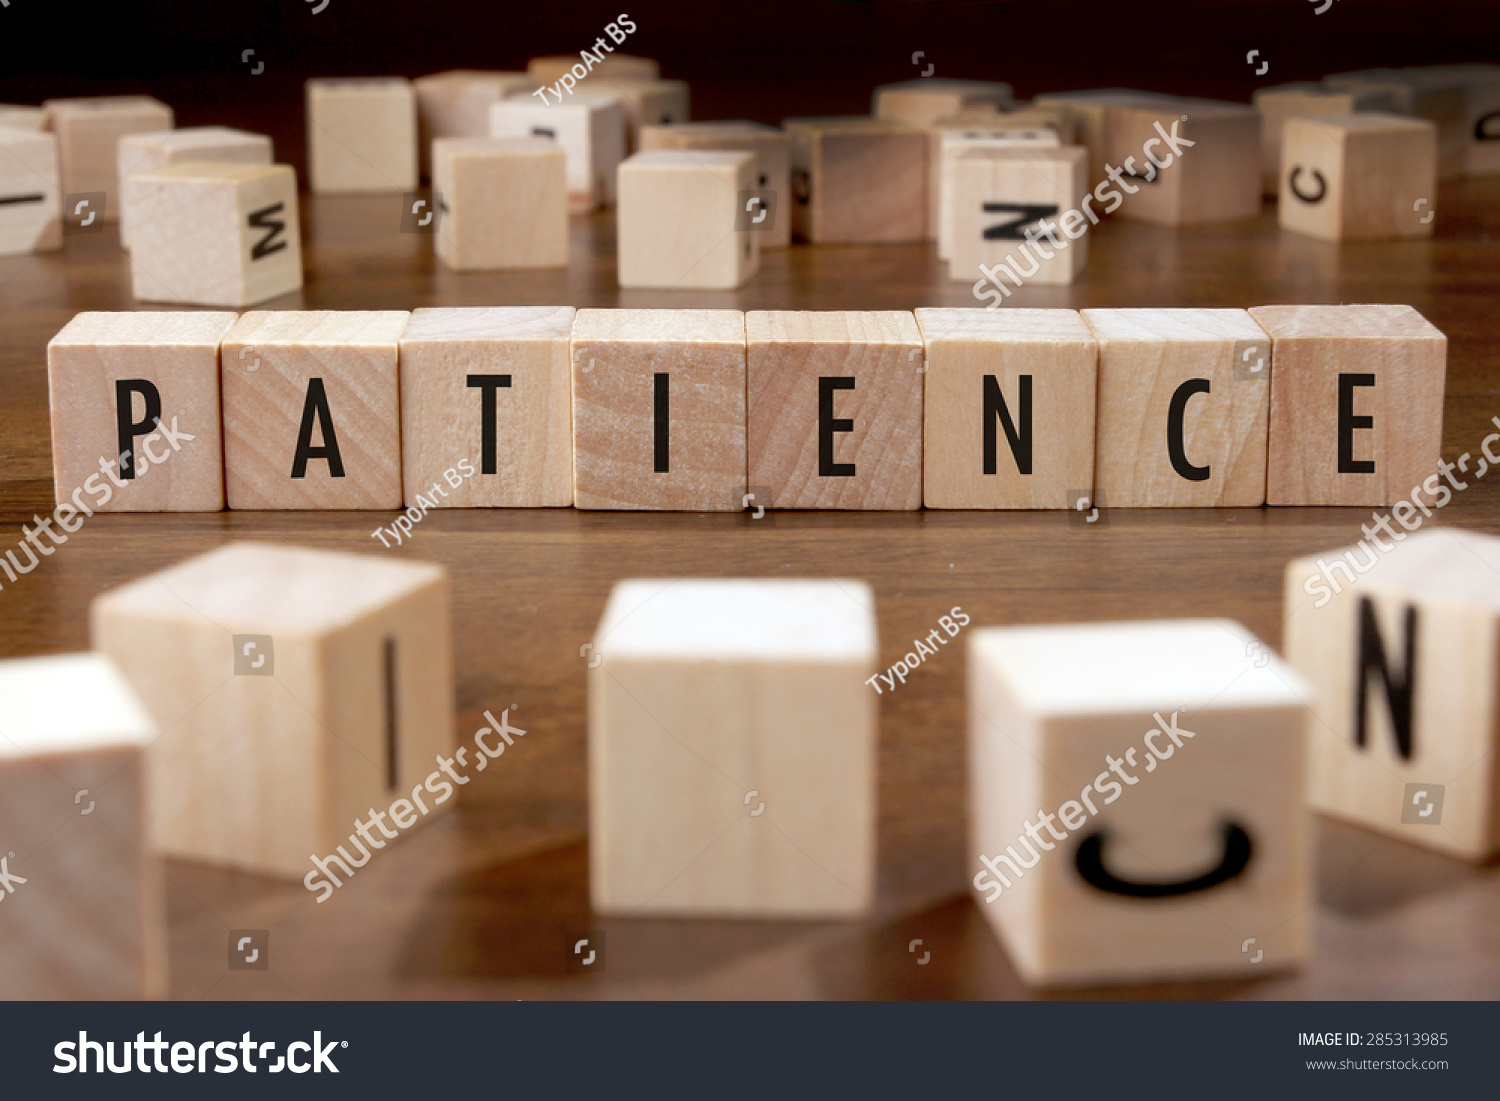 PATIENCE word written on wood block #285313985